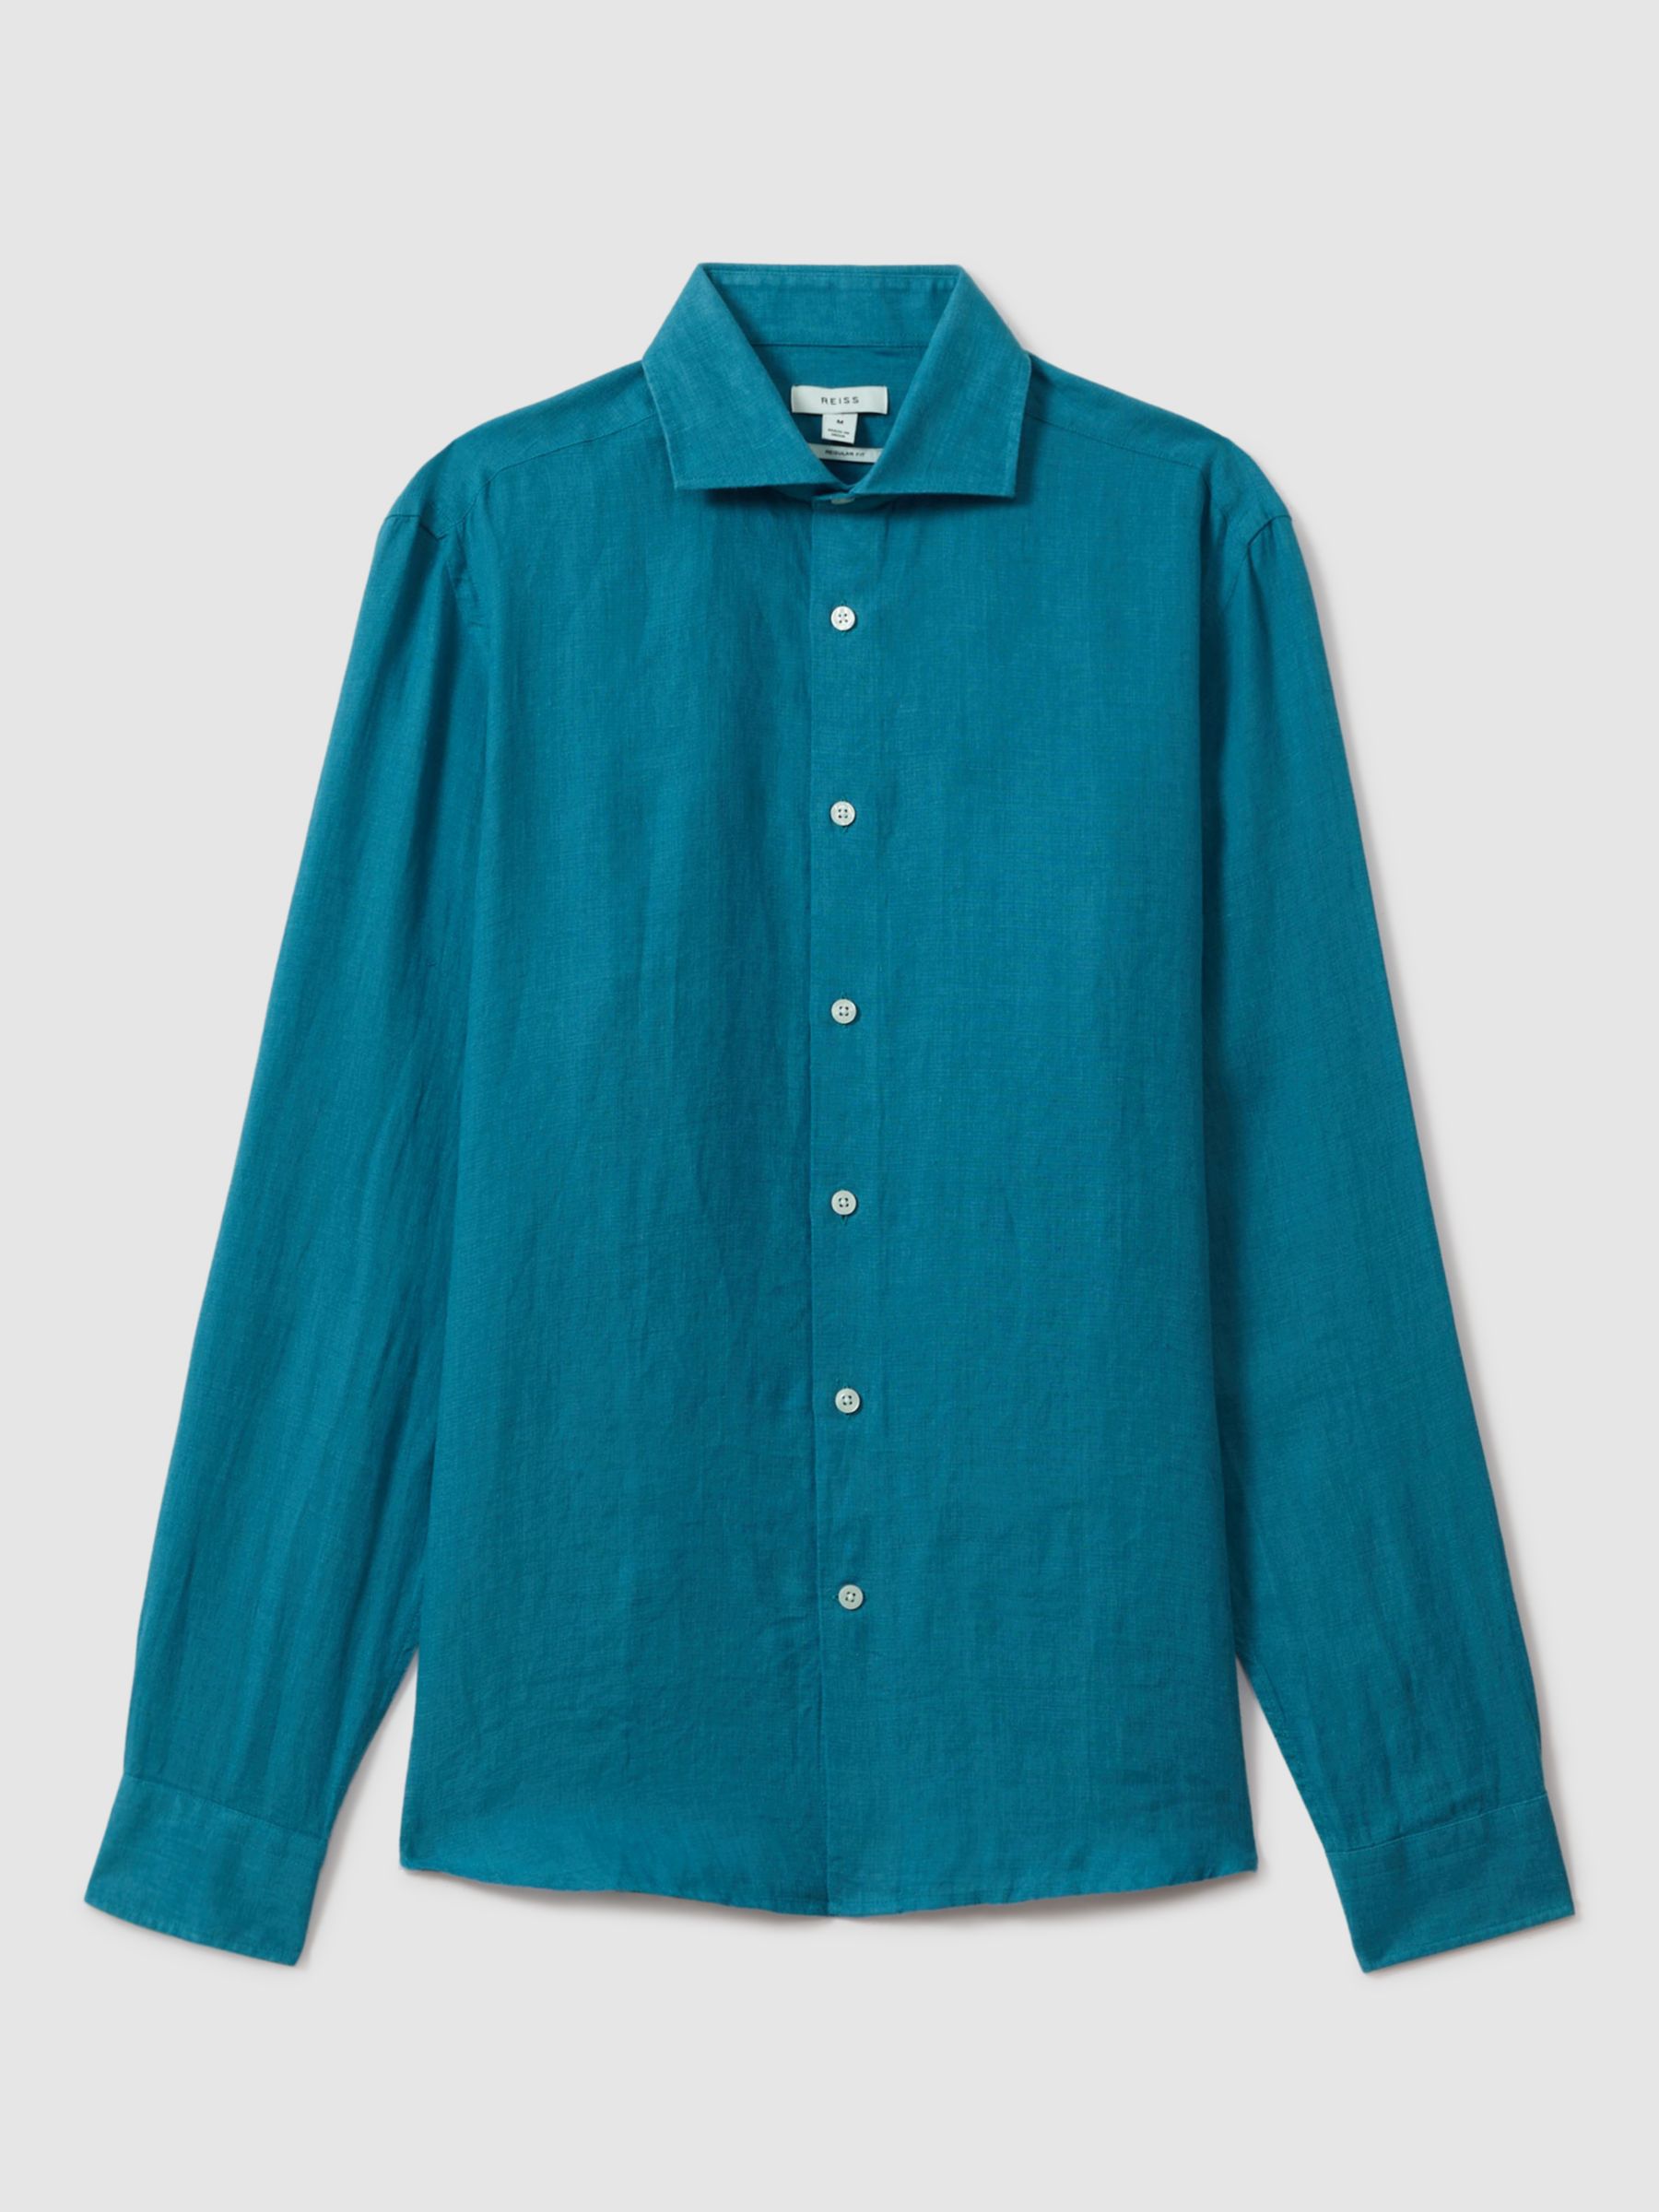 Reiss Ruban Regular Fit Linen Shirt, Turquoise, XS